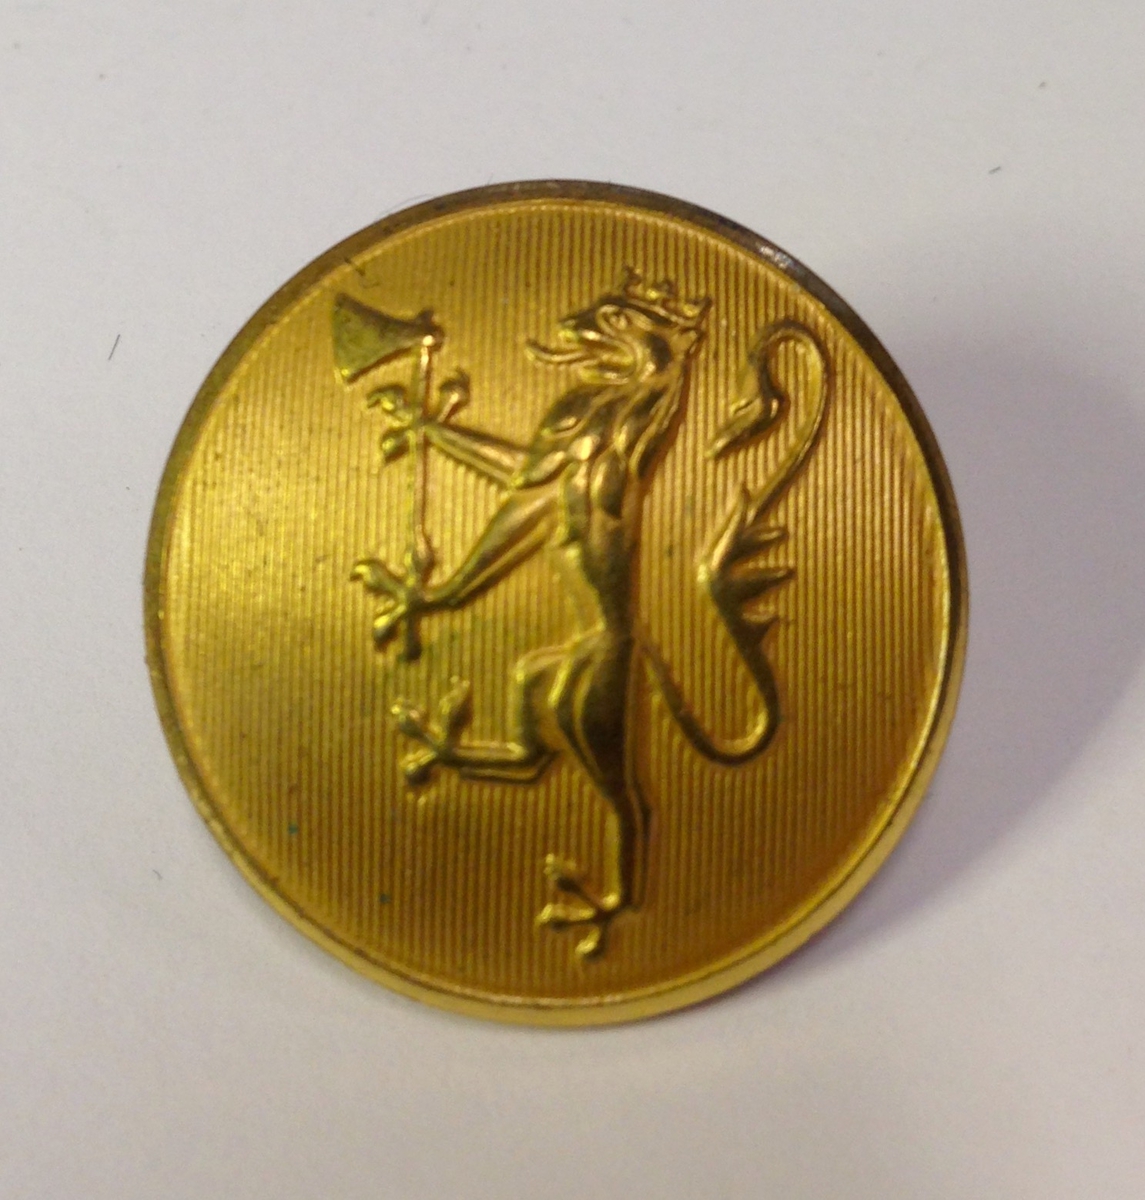 29 store og 15 små gullfargete metallknapper med løvemotiv.